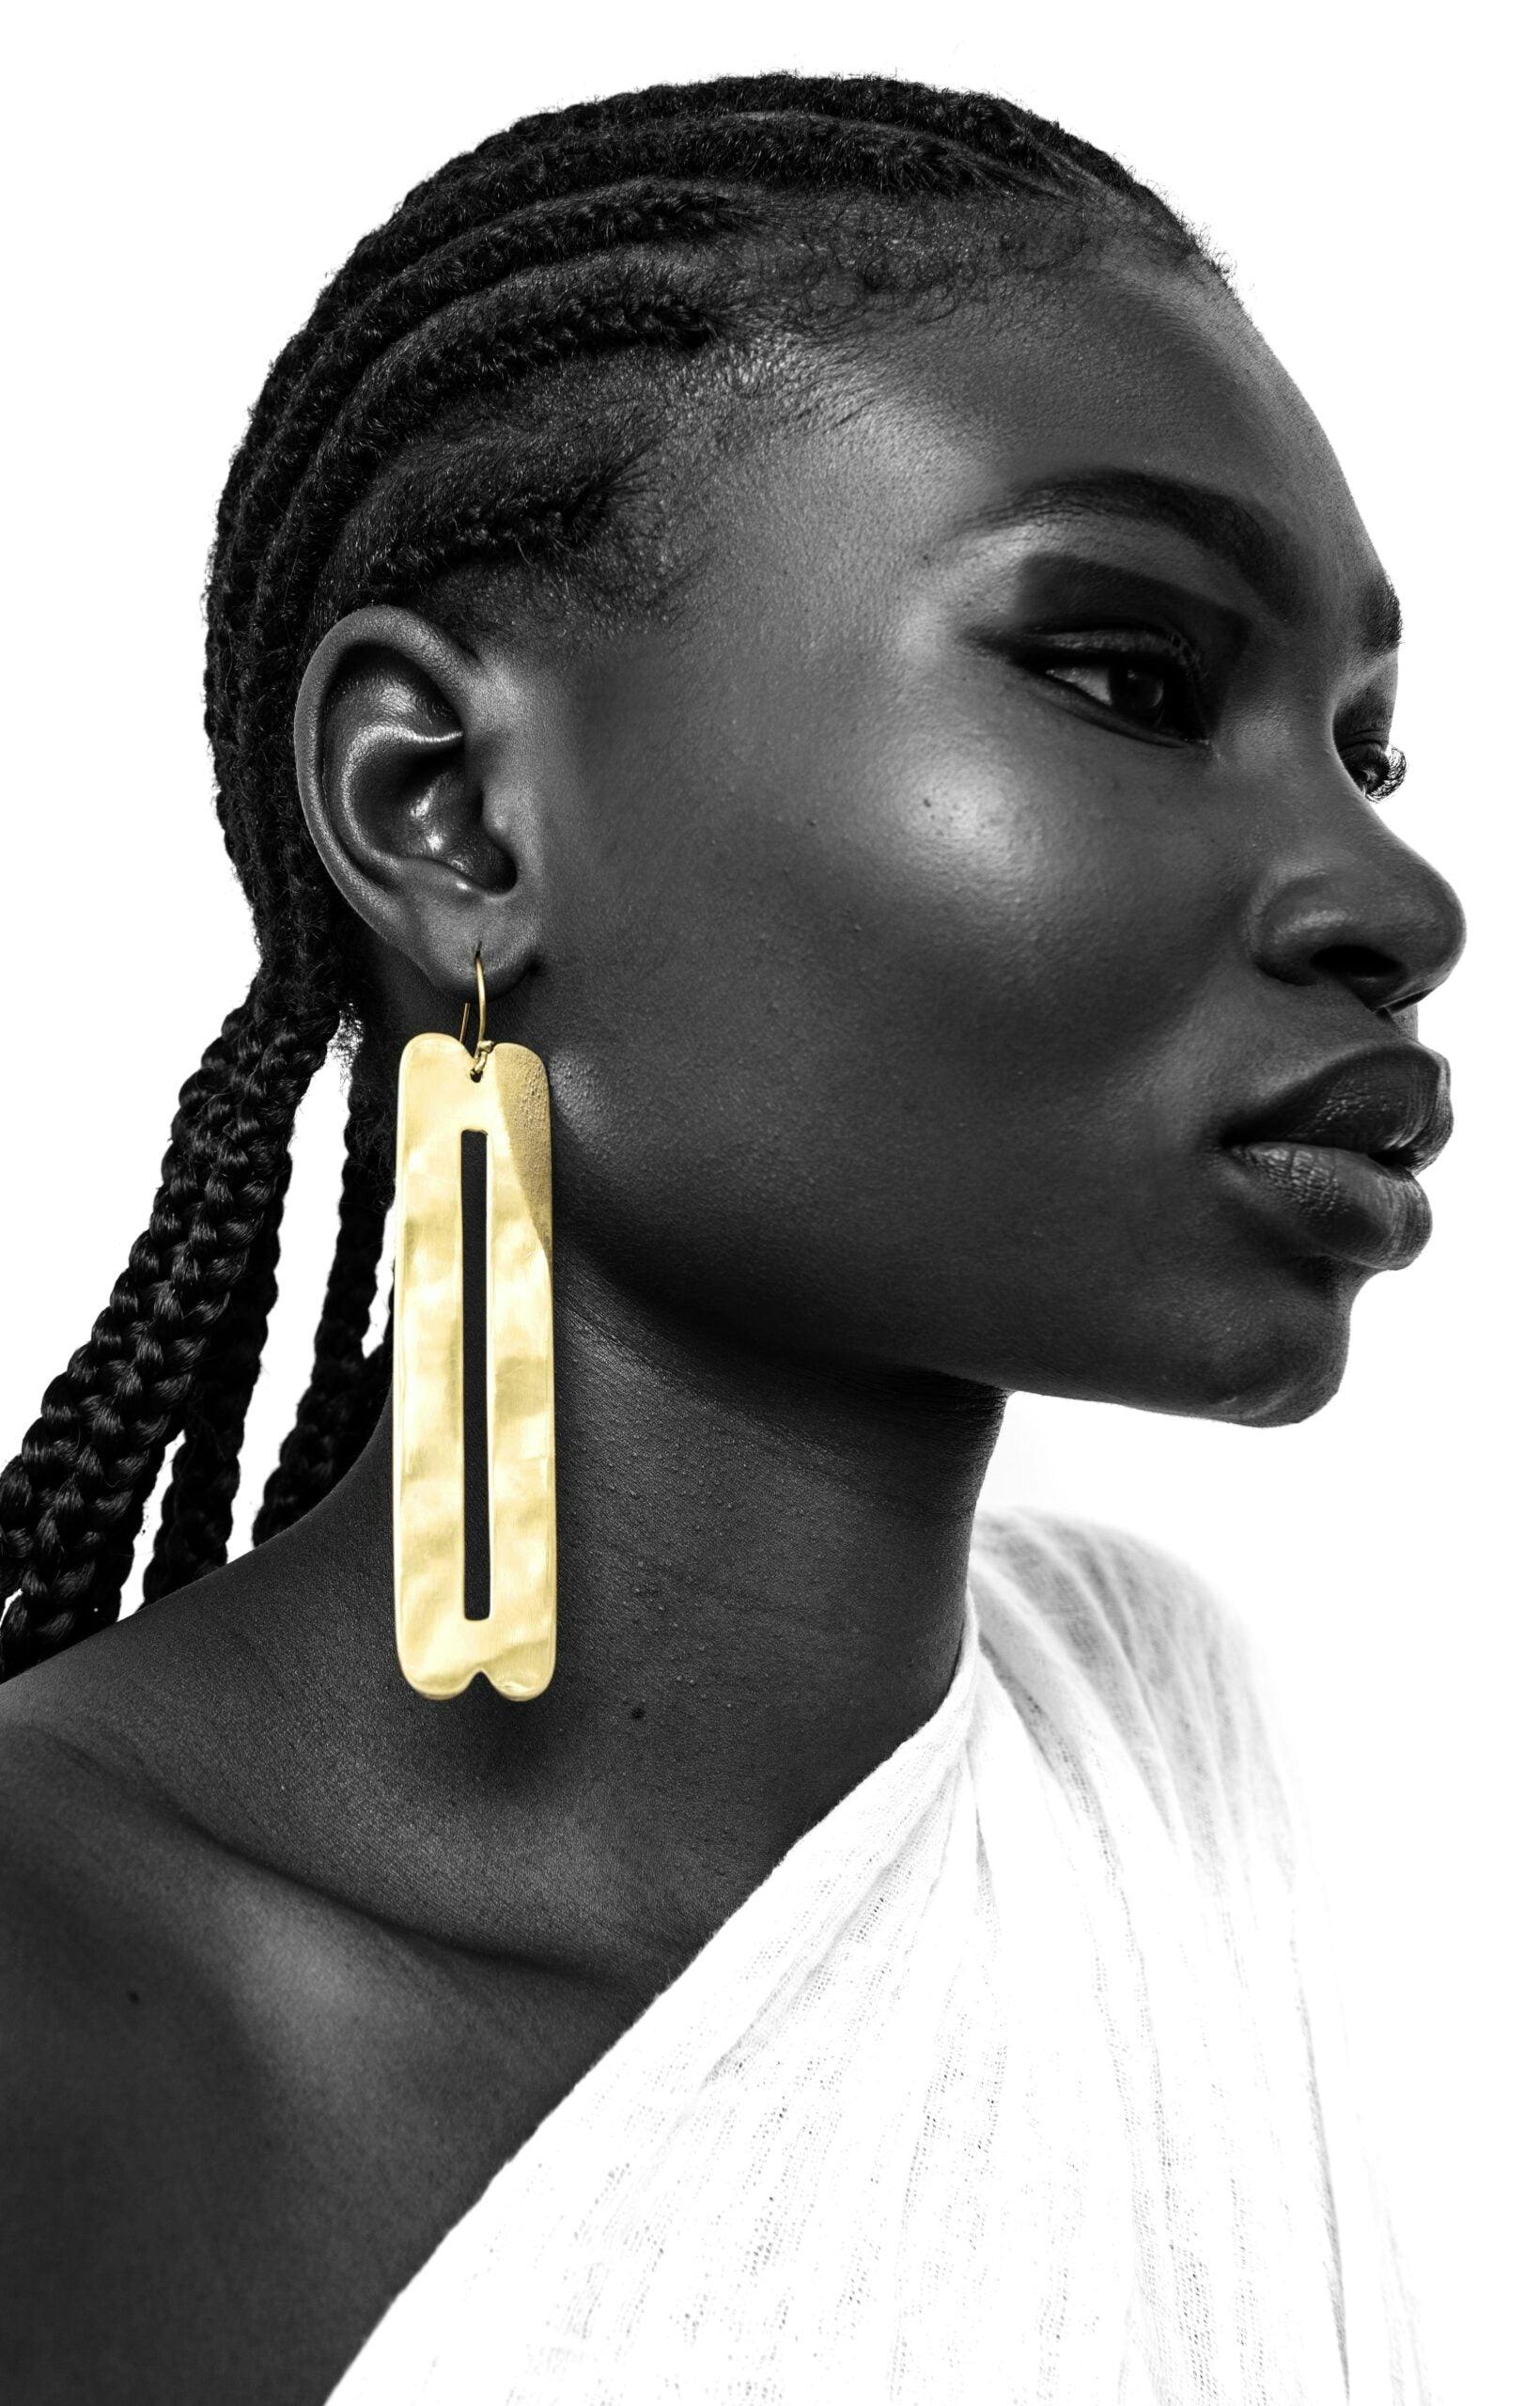 Fena Handmade Brass Earrings, a product by Adele Dejak